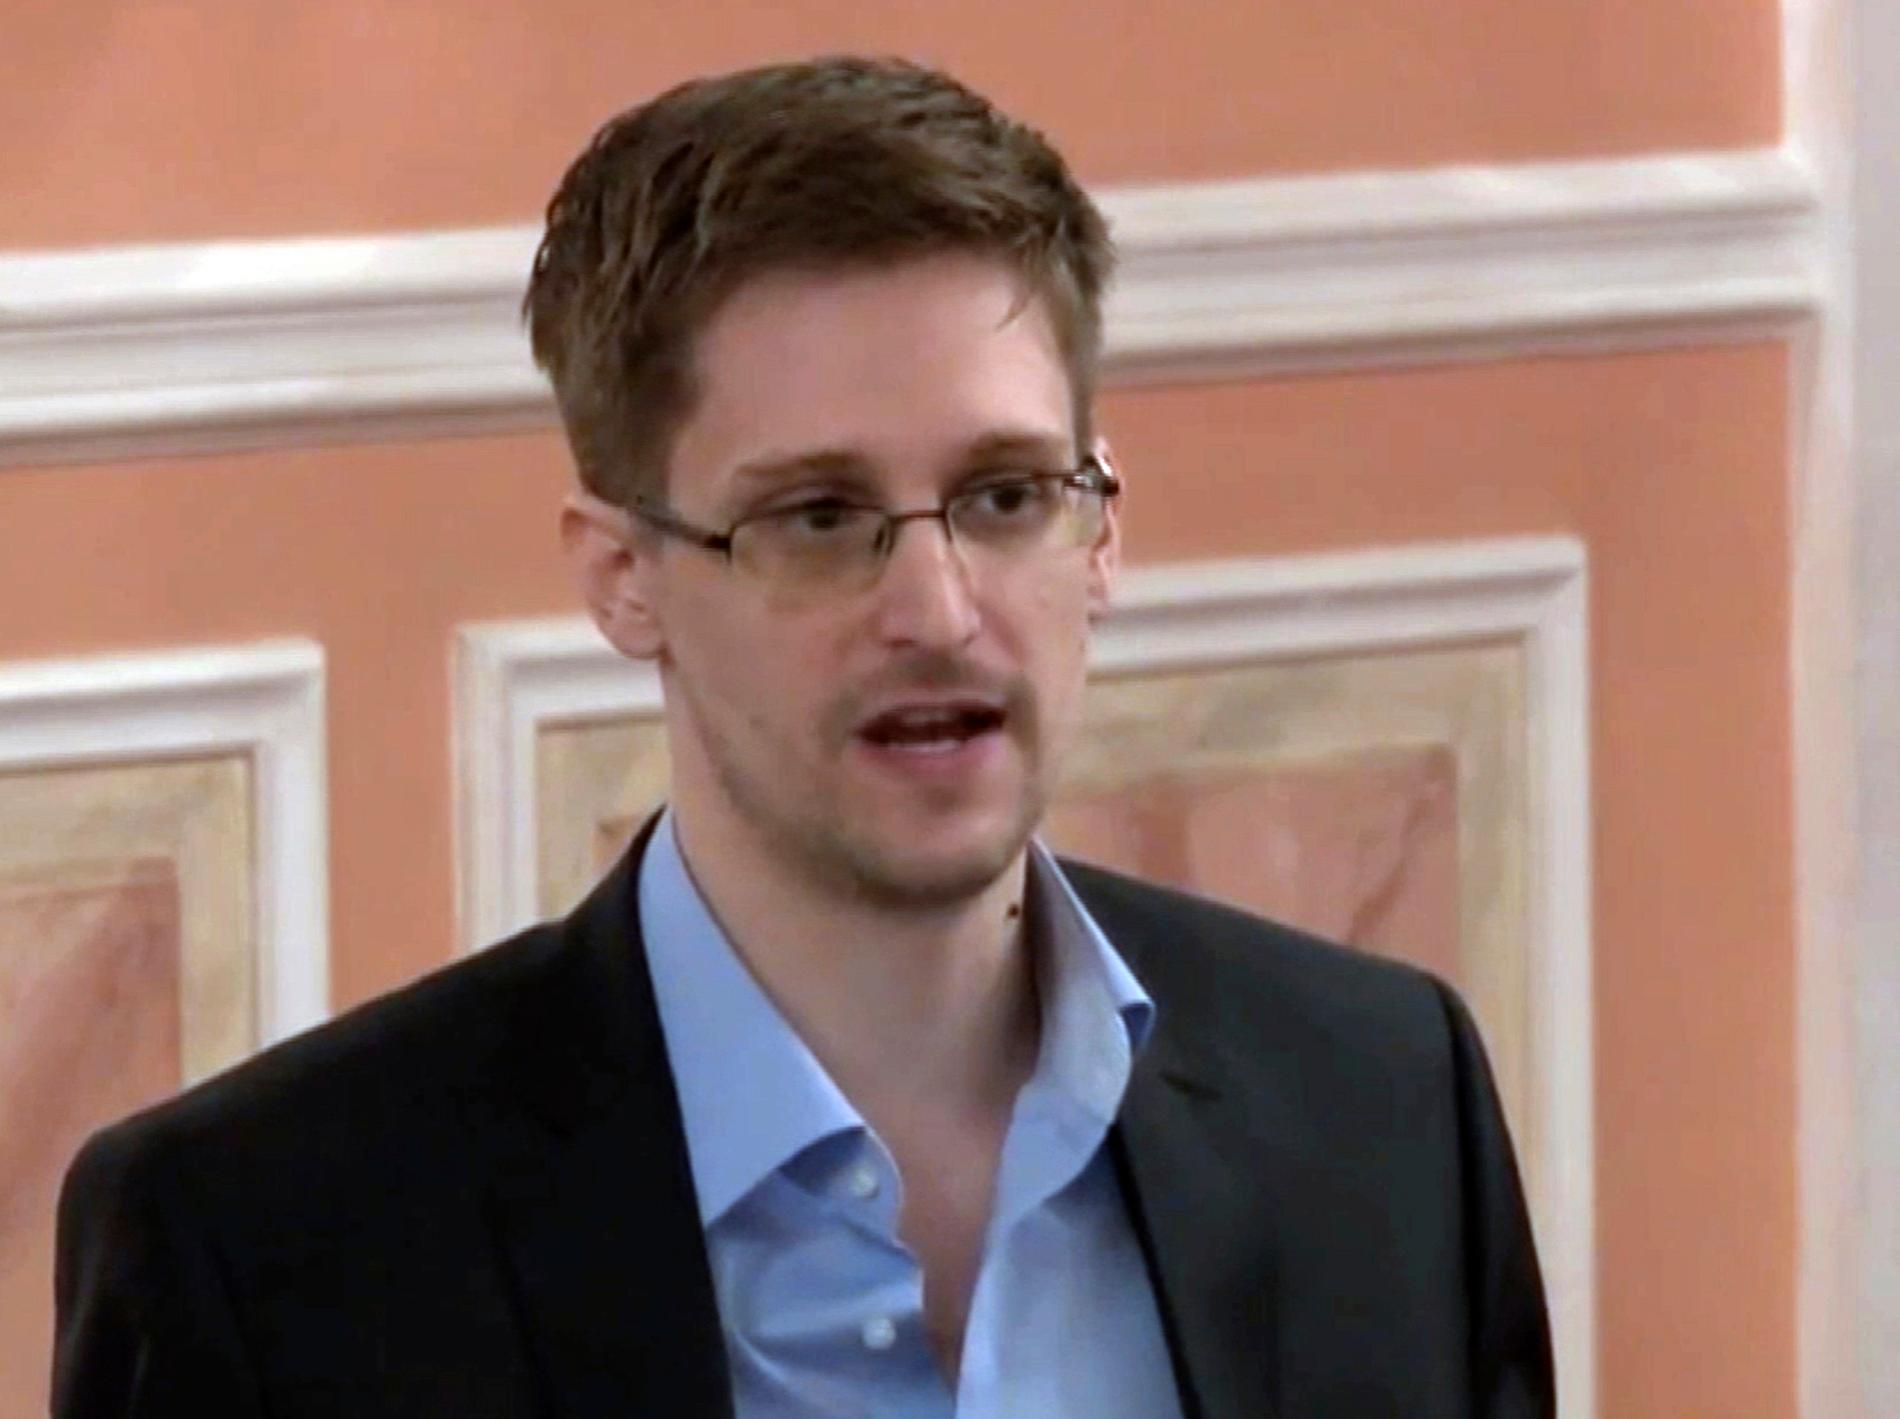 Visselblåsaren Edward Snowden, som 2013 avslöjade det globala övervakningssamhället och sedan dess lever i exil. ”Övervakningen av våra liv är större än någonsin. De tio senaste åren visar – ännu en gång – på vår oförmåga att omsätta visselblåsarnas avslöjanden till politiskt ansvarsutkrävande”, skriver Mattias Beijmo.